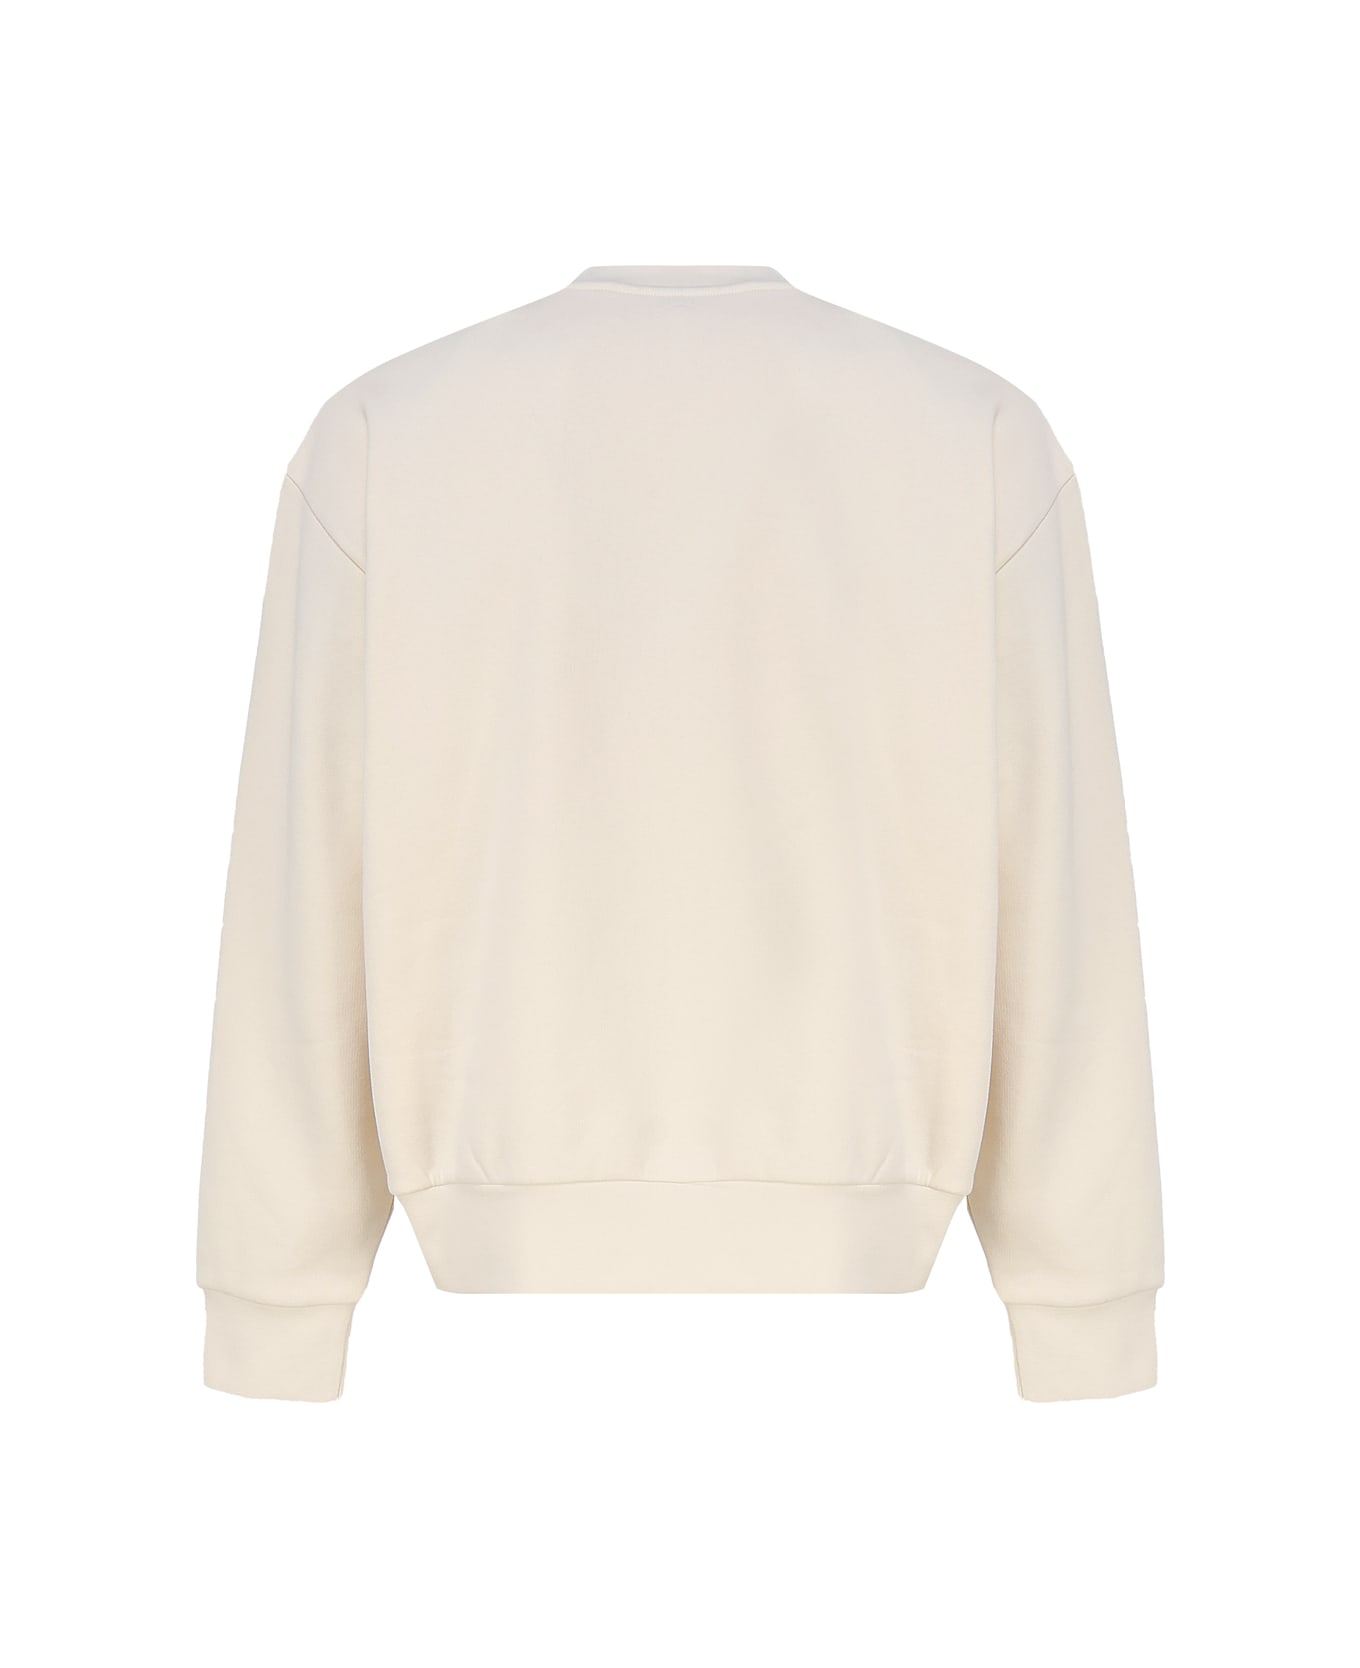 Moncler Genius Logoed Sweatshirt - White フリース